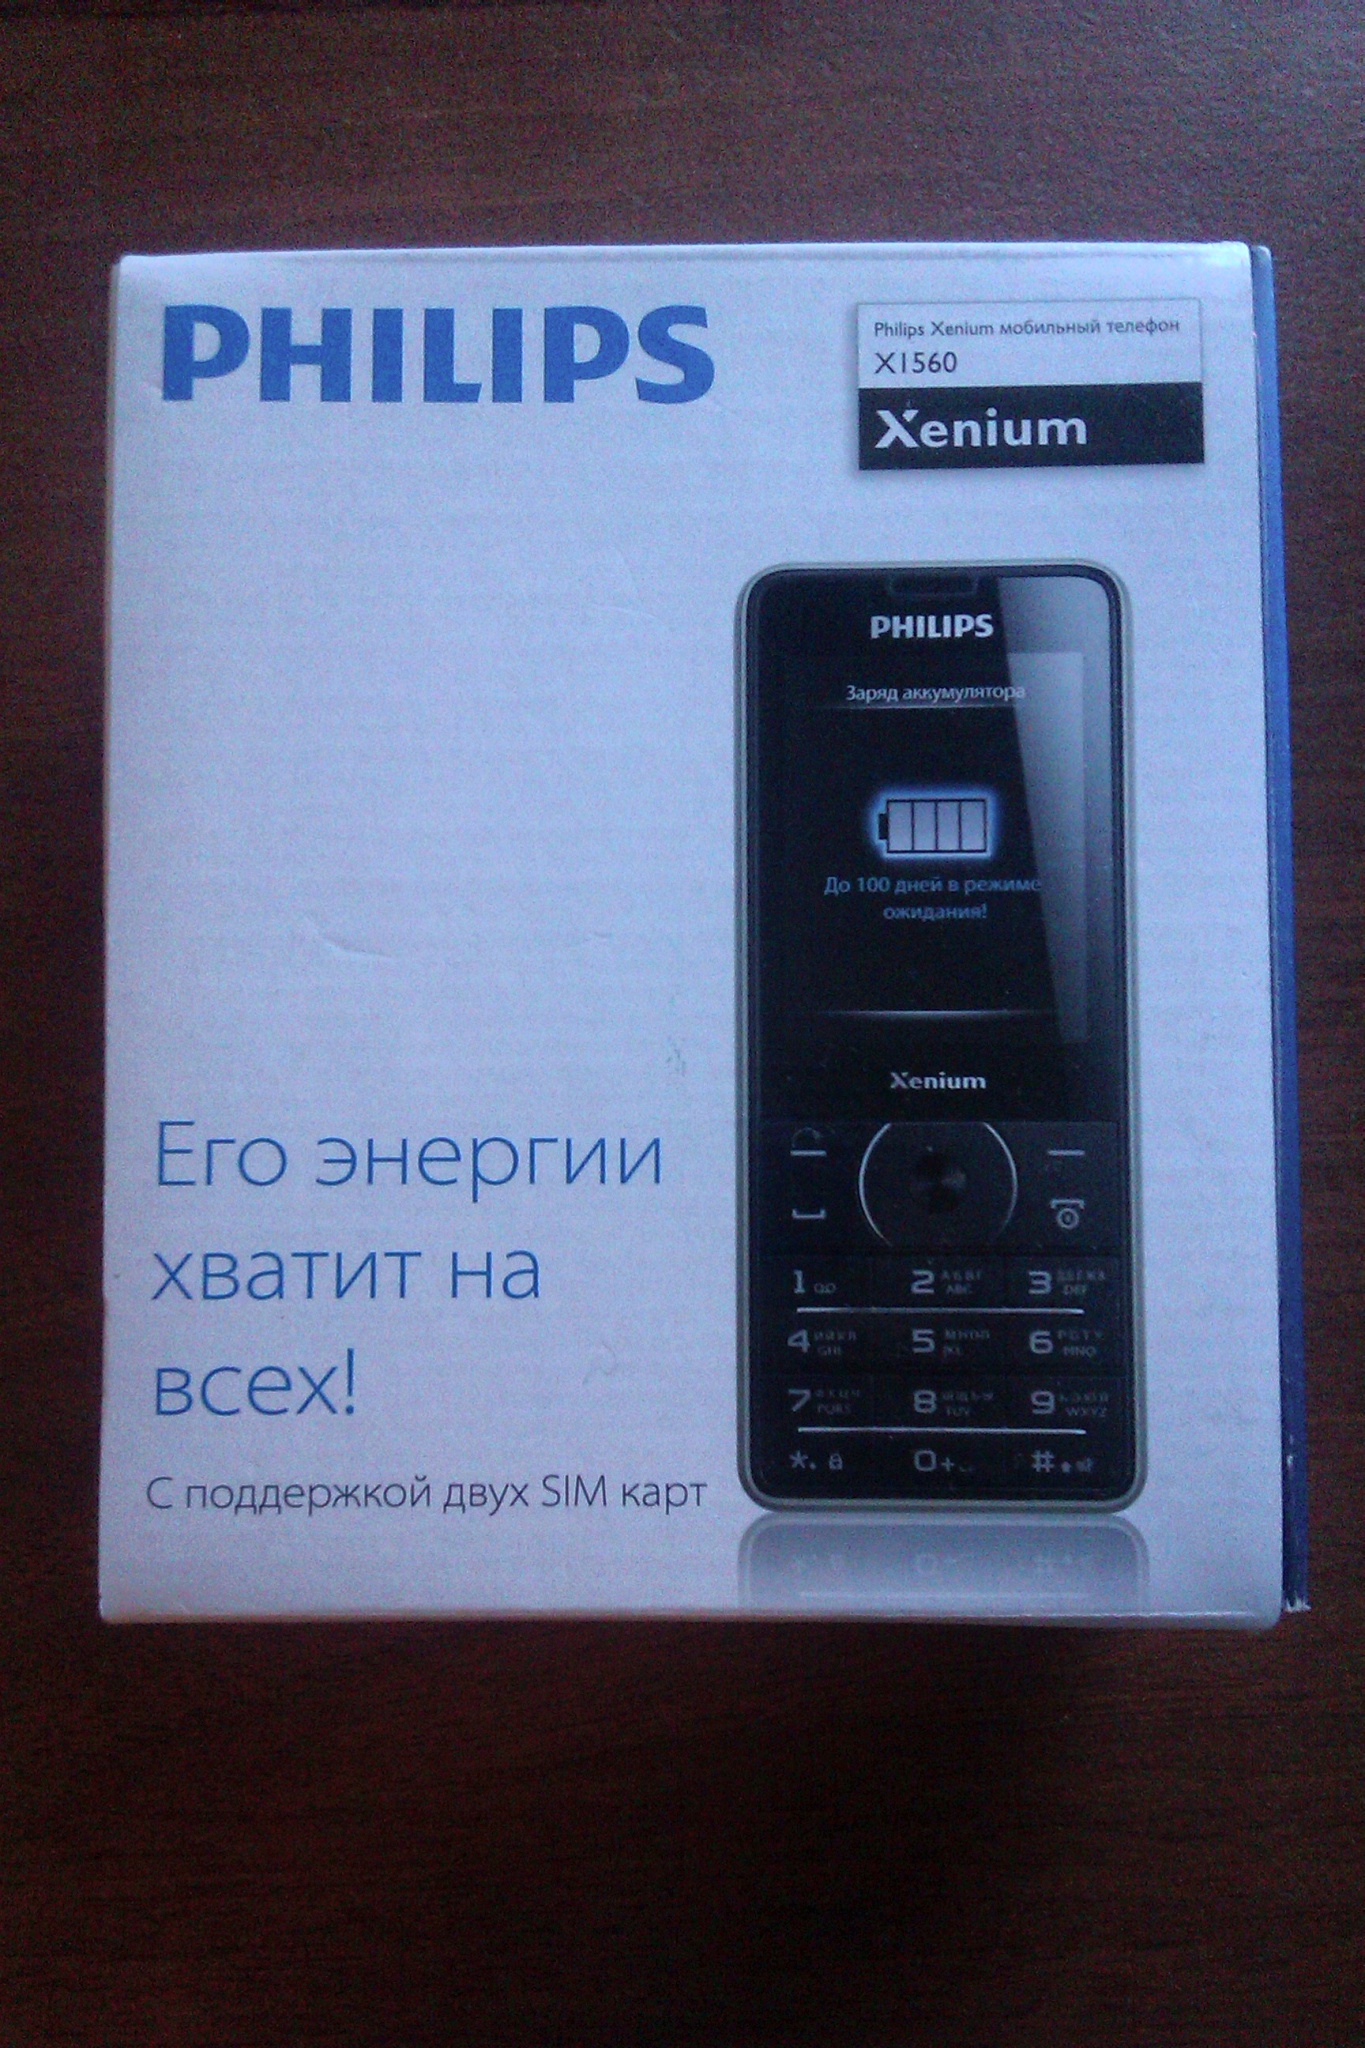 Philips xenium настройка. Philips Xenium x1560. Philips x1560 (Black). Мобильный телефон Philips x1560 Black. Телефон Филипс ксениум x1560.